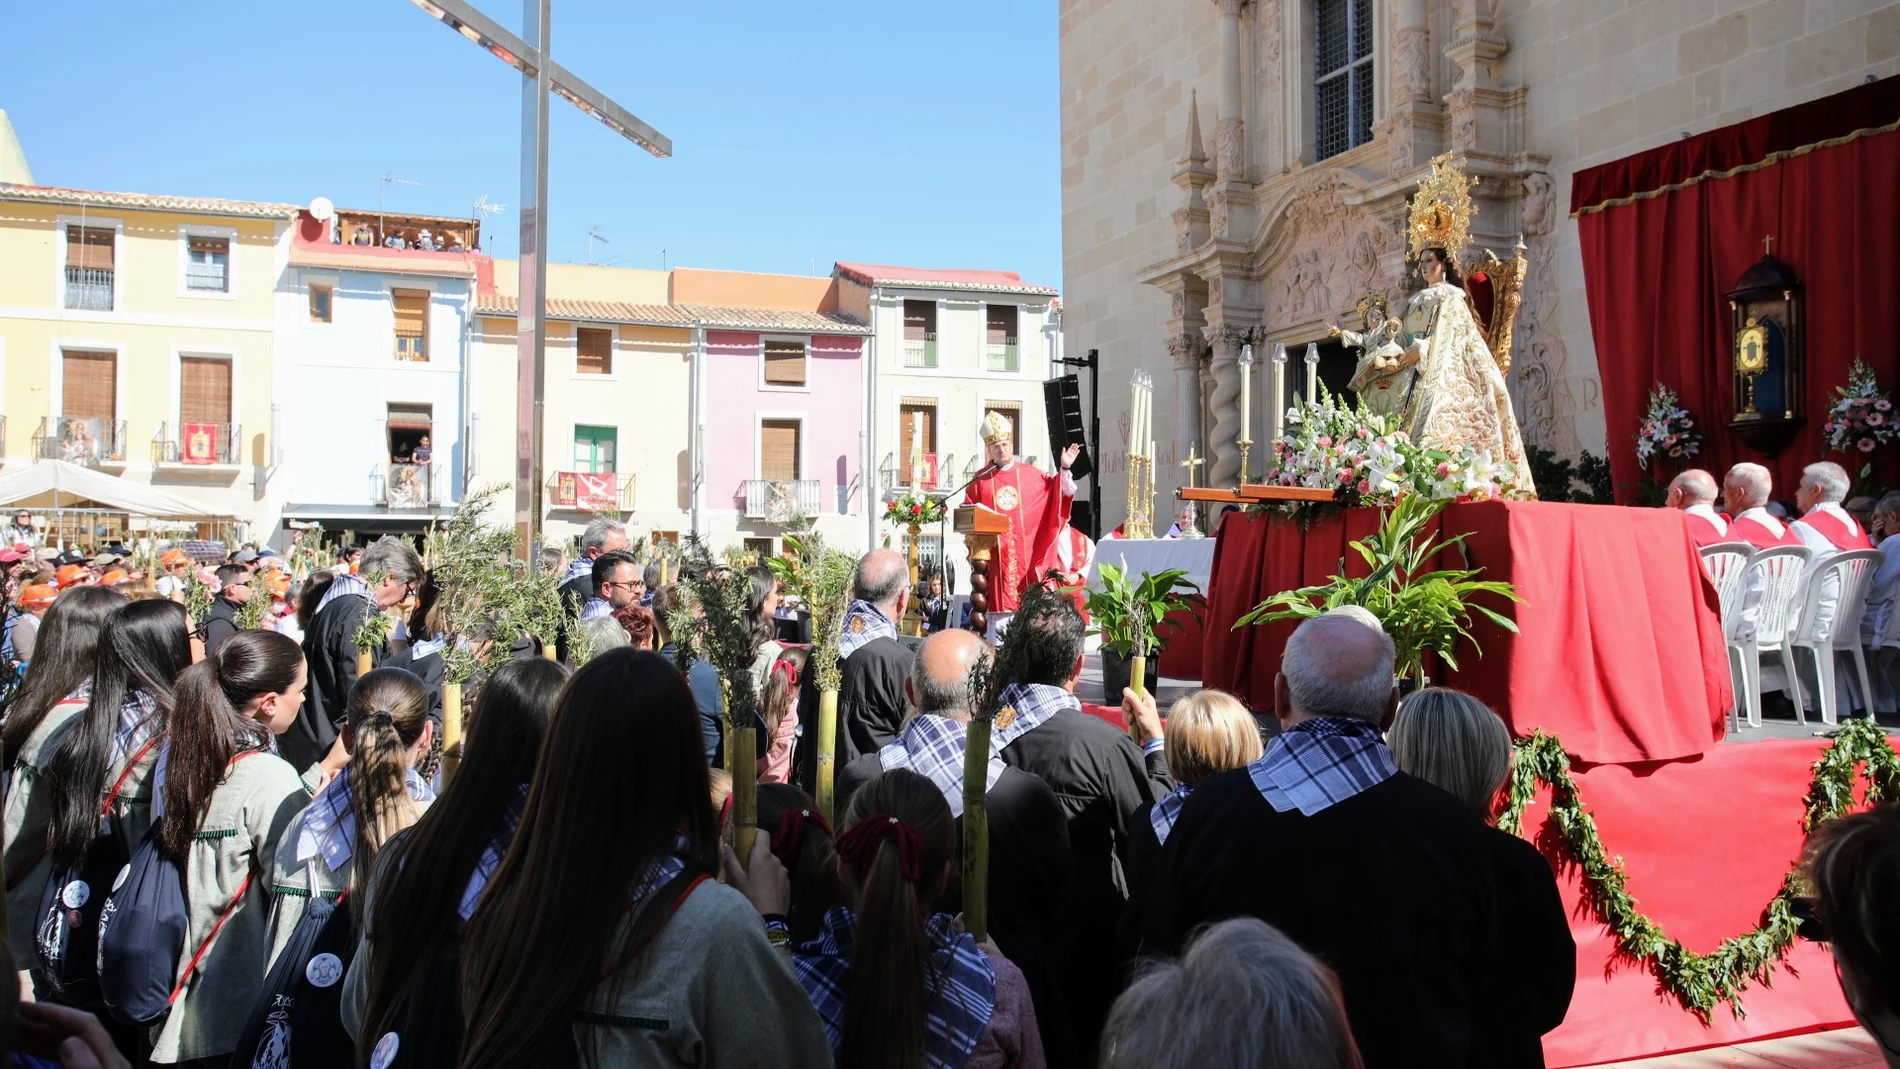 La Santa Faz estará en Alicante con motivo del 25 aniversario de la Coronación de la Virgen del Remedio, la patrona de la ciudad.